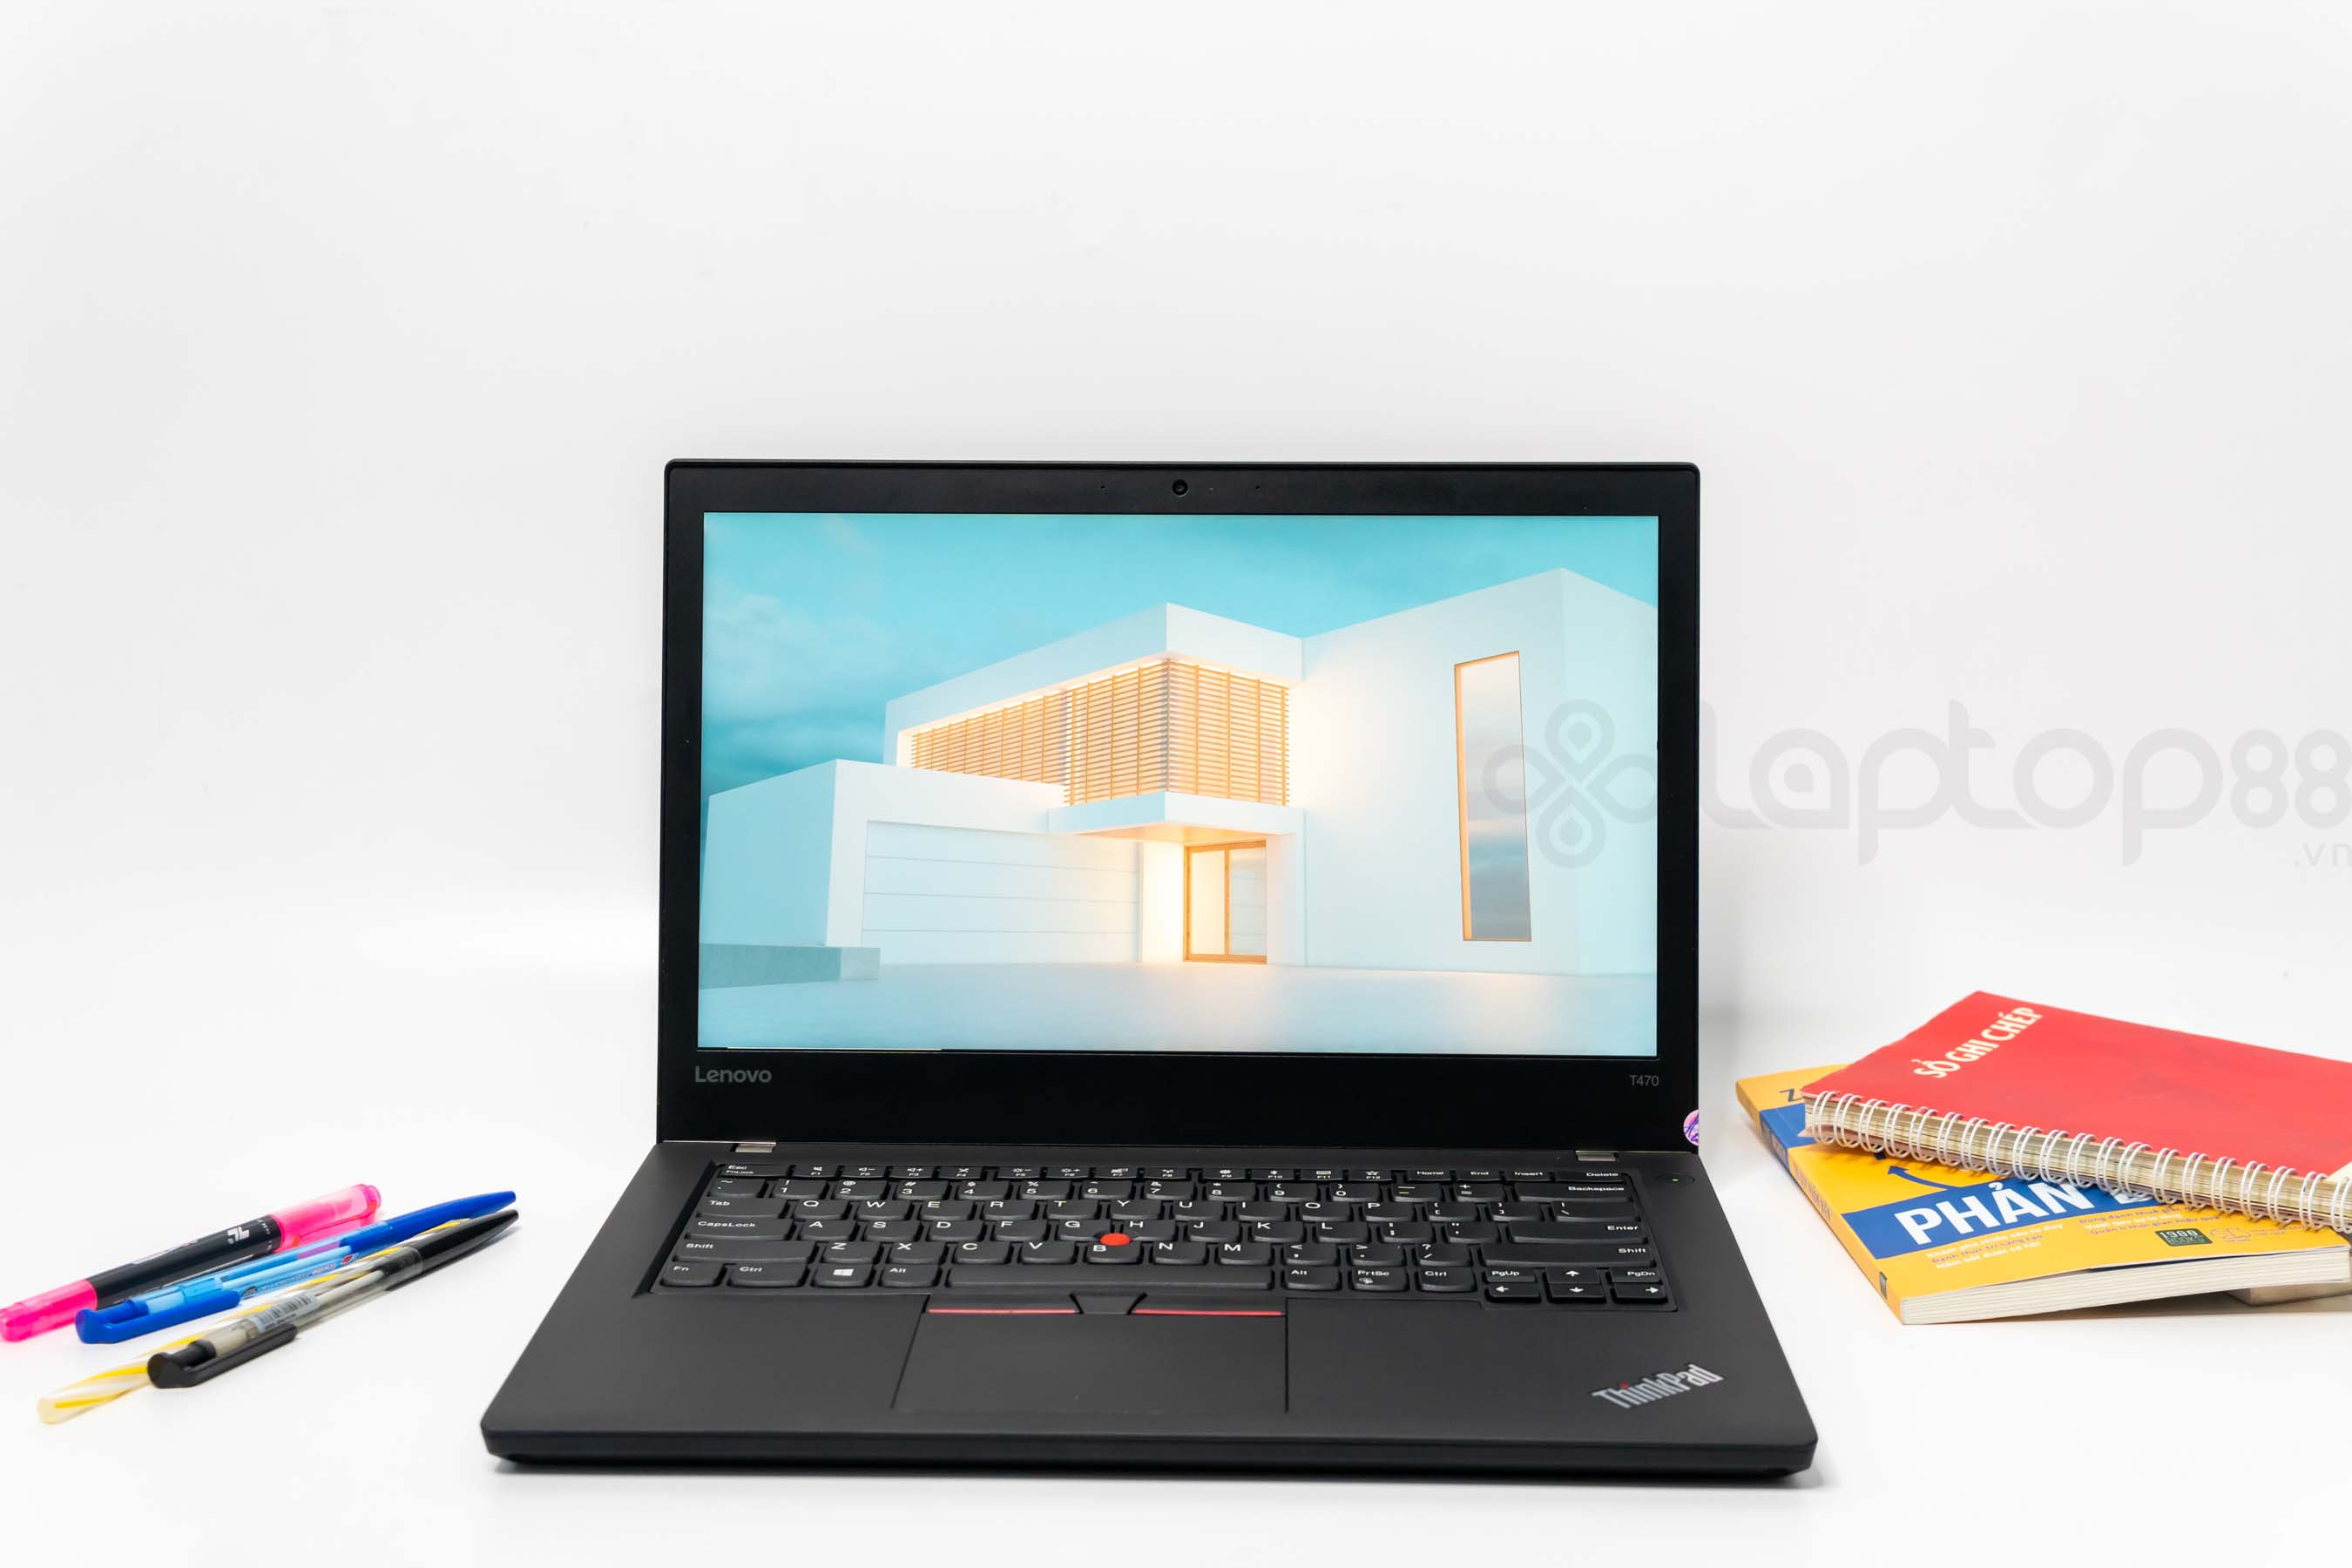 Lenovo Thinkpad T470 Giá Rẻ Nhất Thị Trường Chỉ Từ 7 Triệu - Siêu Bền, Làm  Việc Mượt, Giá Rẻ Nhất TT